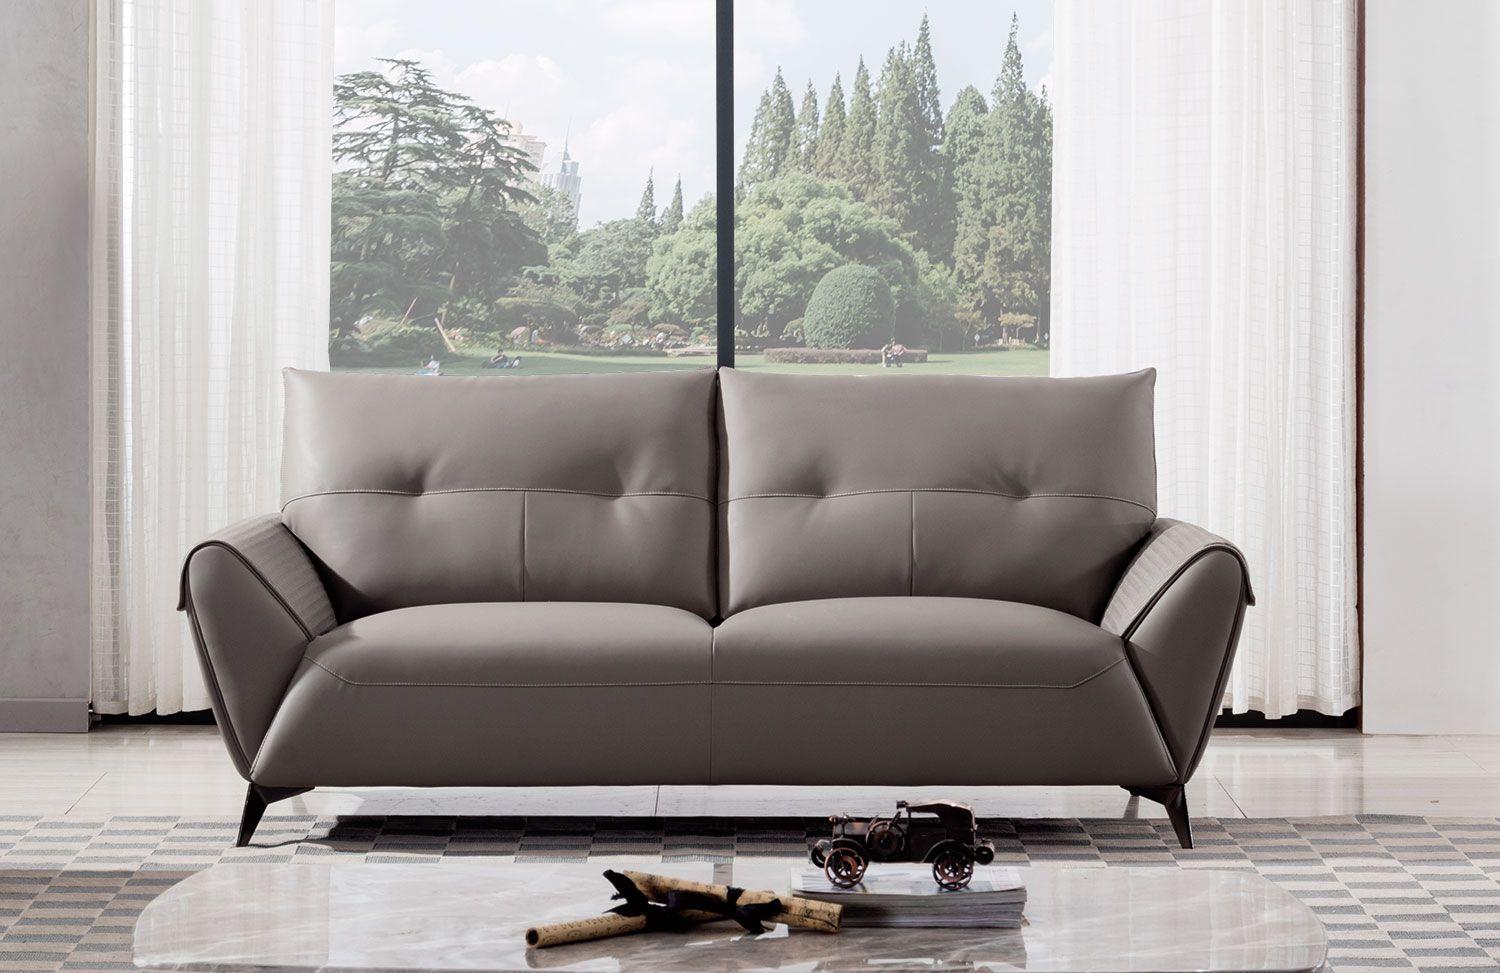 

    
American Eagle Furniture AE618-WG Sofa Set Warm Gray AE618-WG -Set-3
